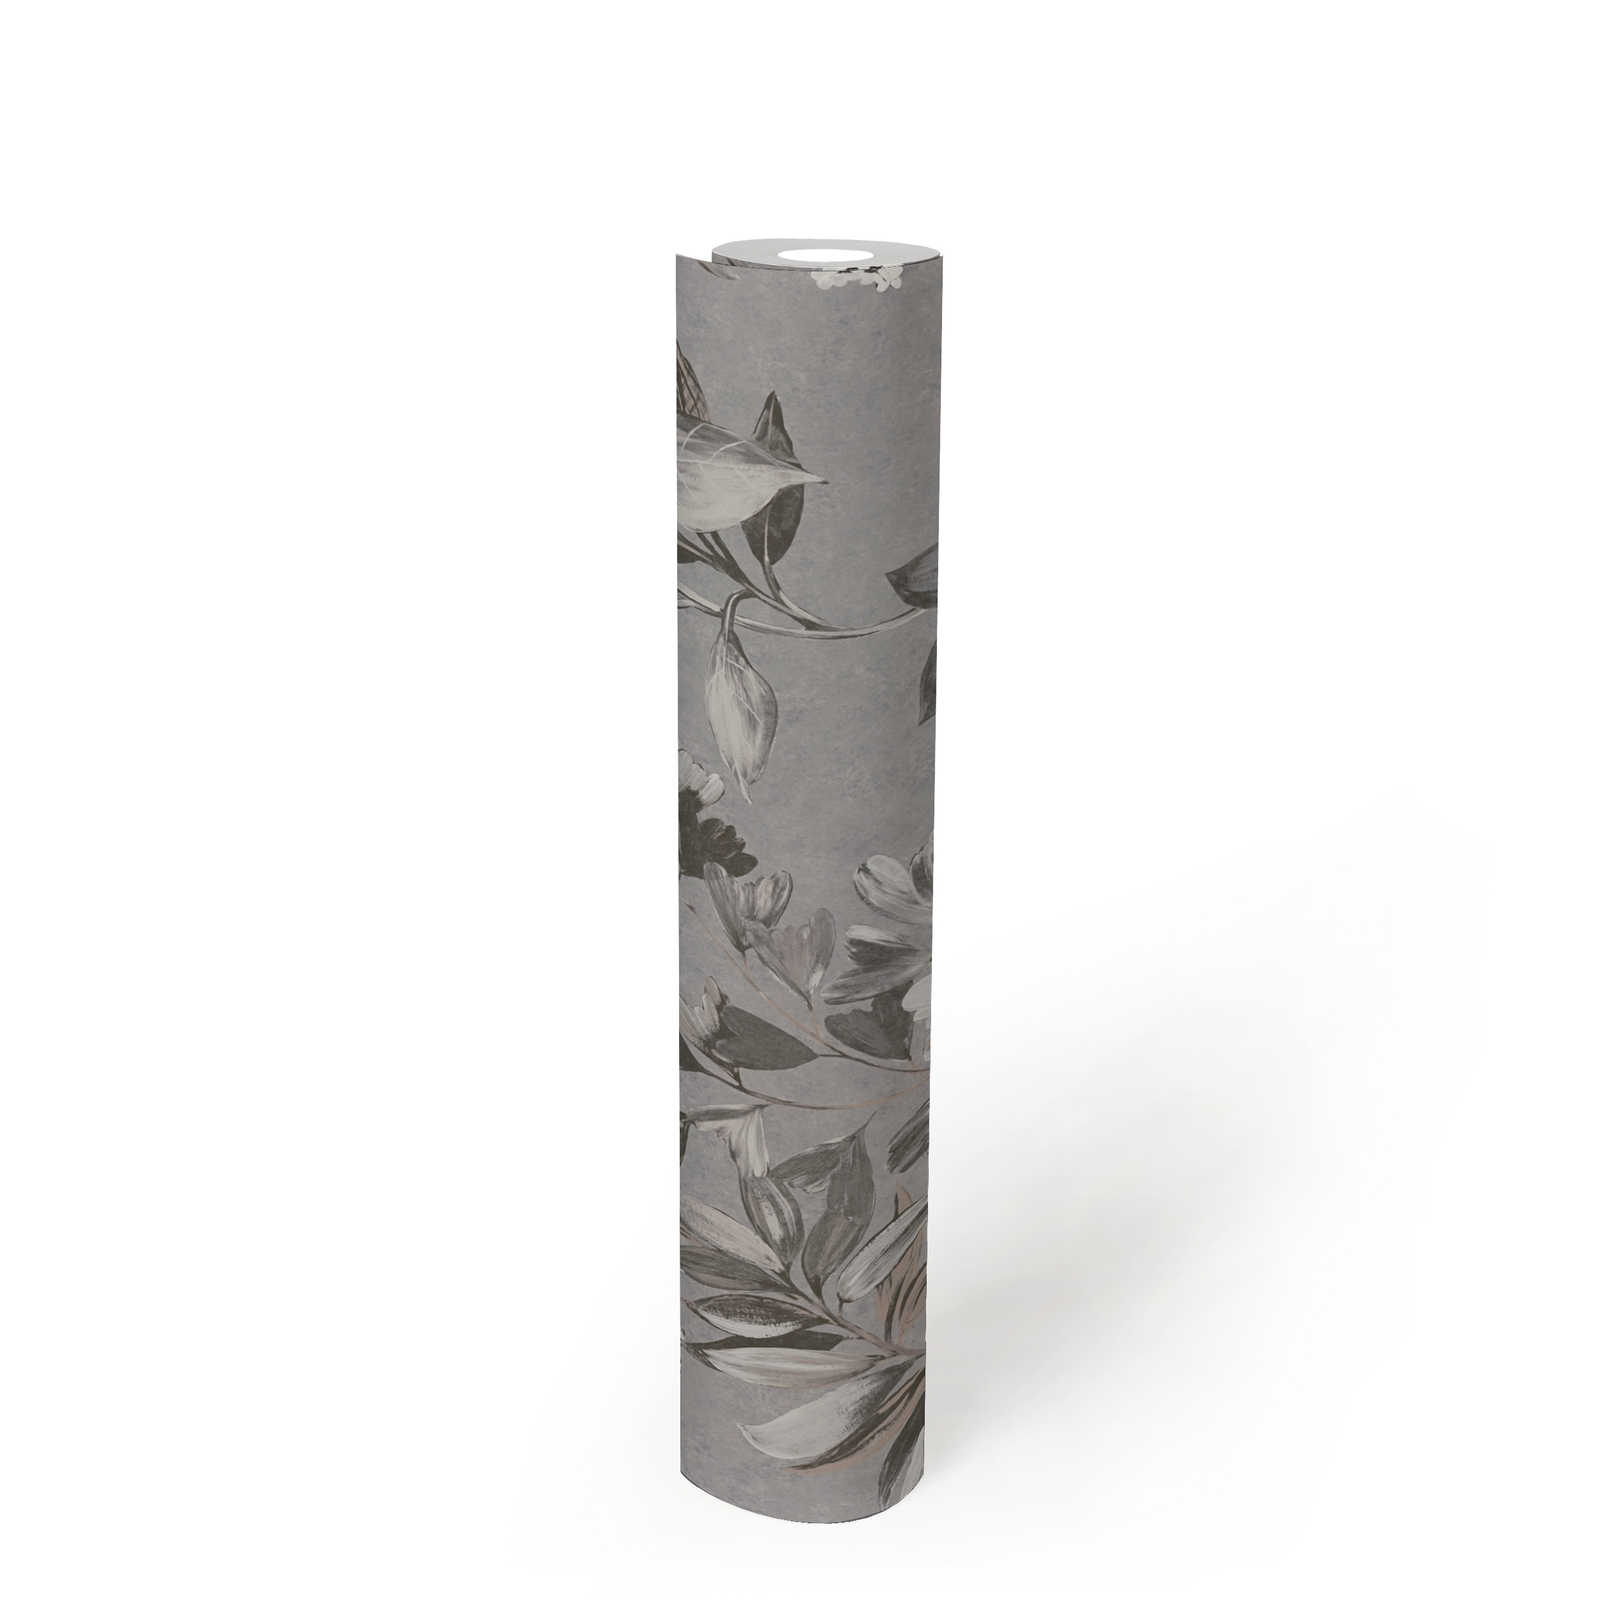             Vliesbehang met bloemenmotief - grijs, wit, zwart
        